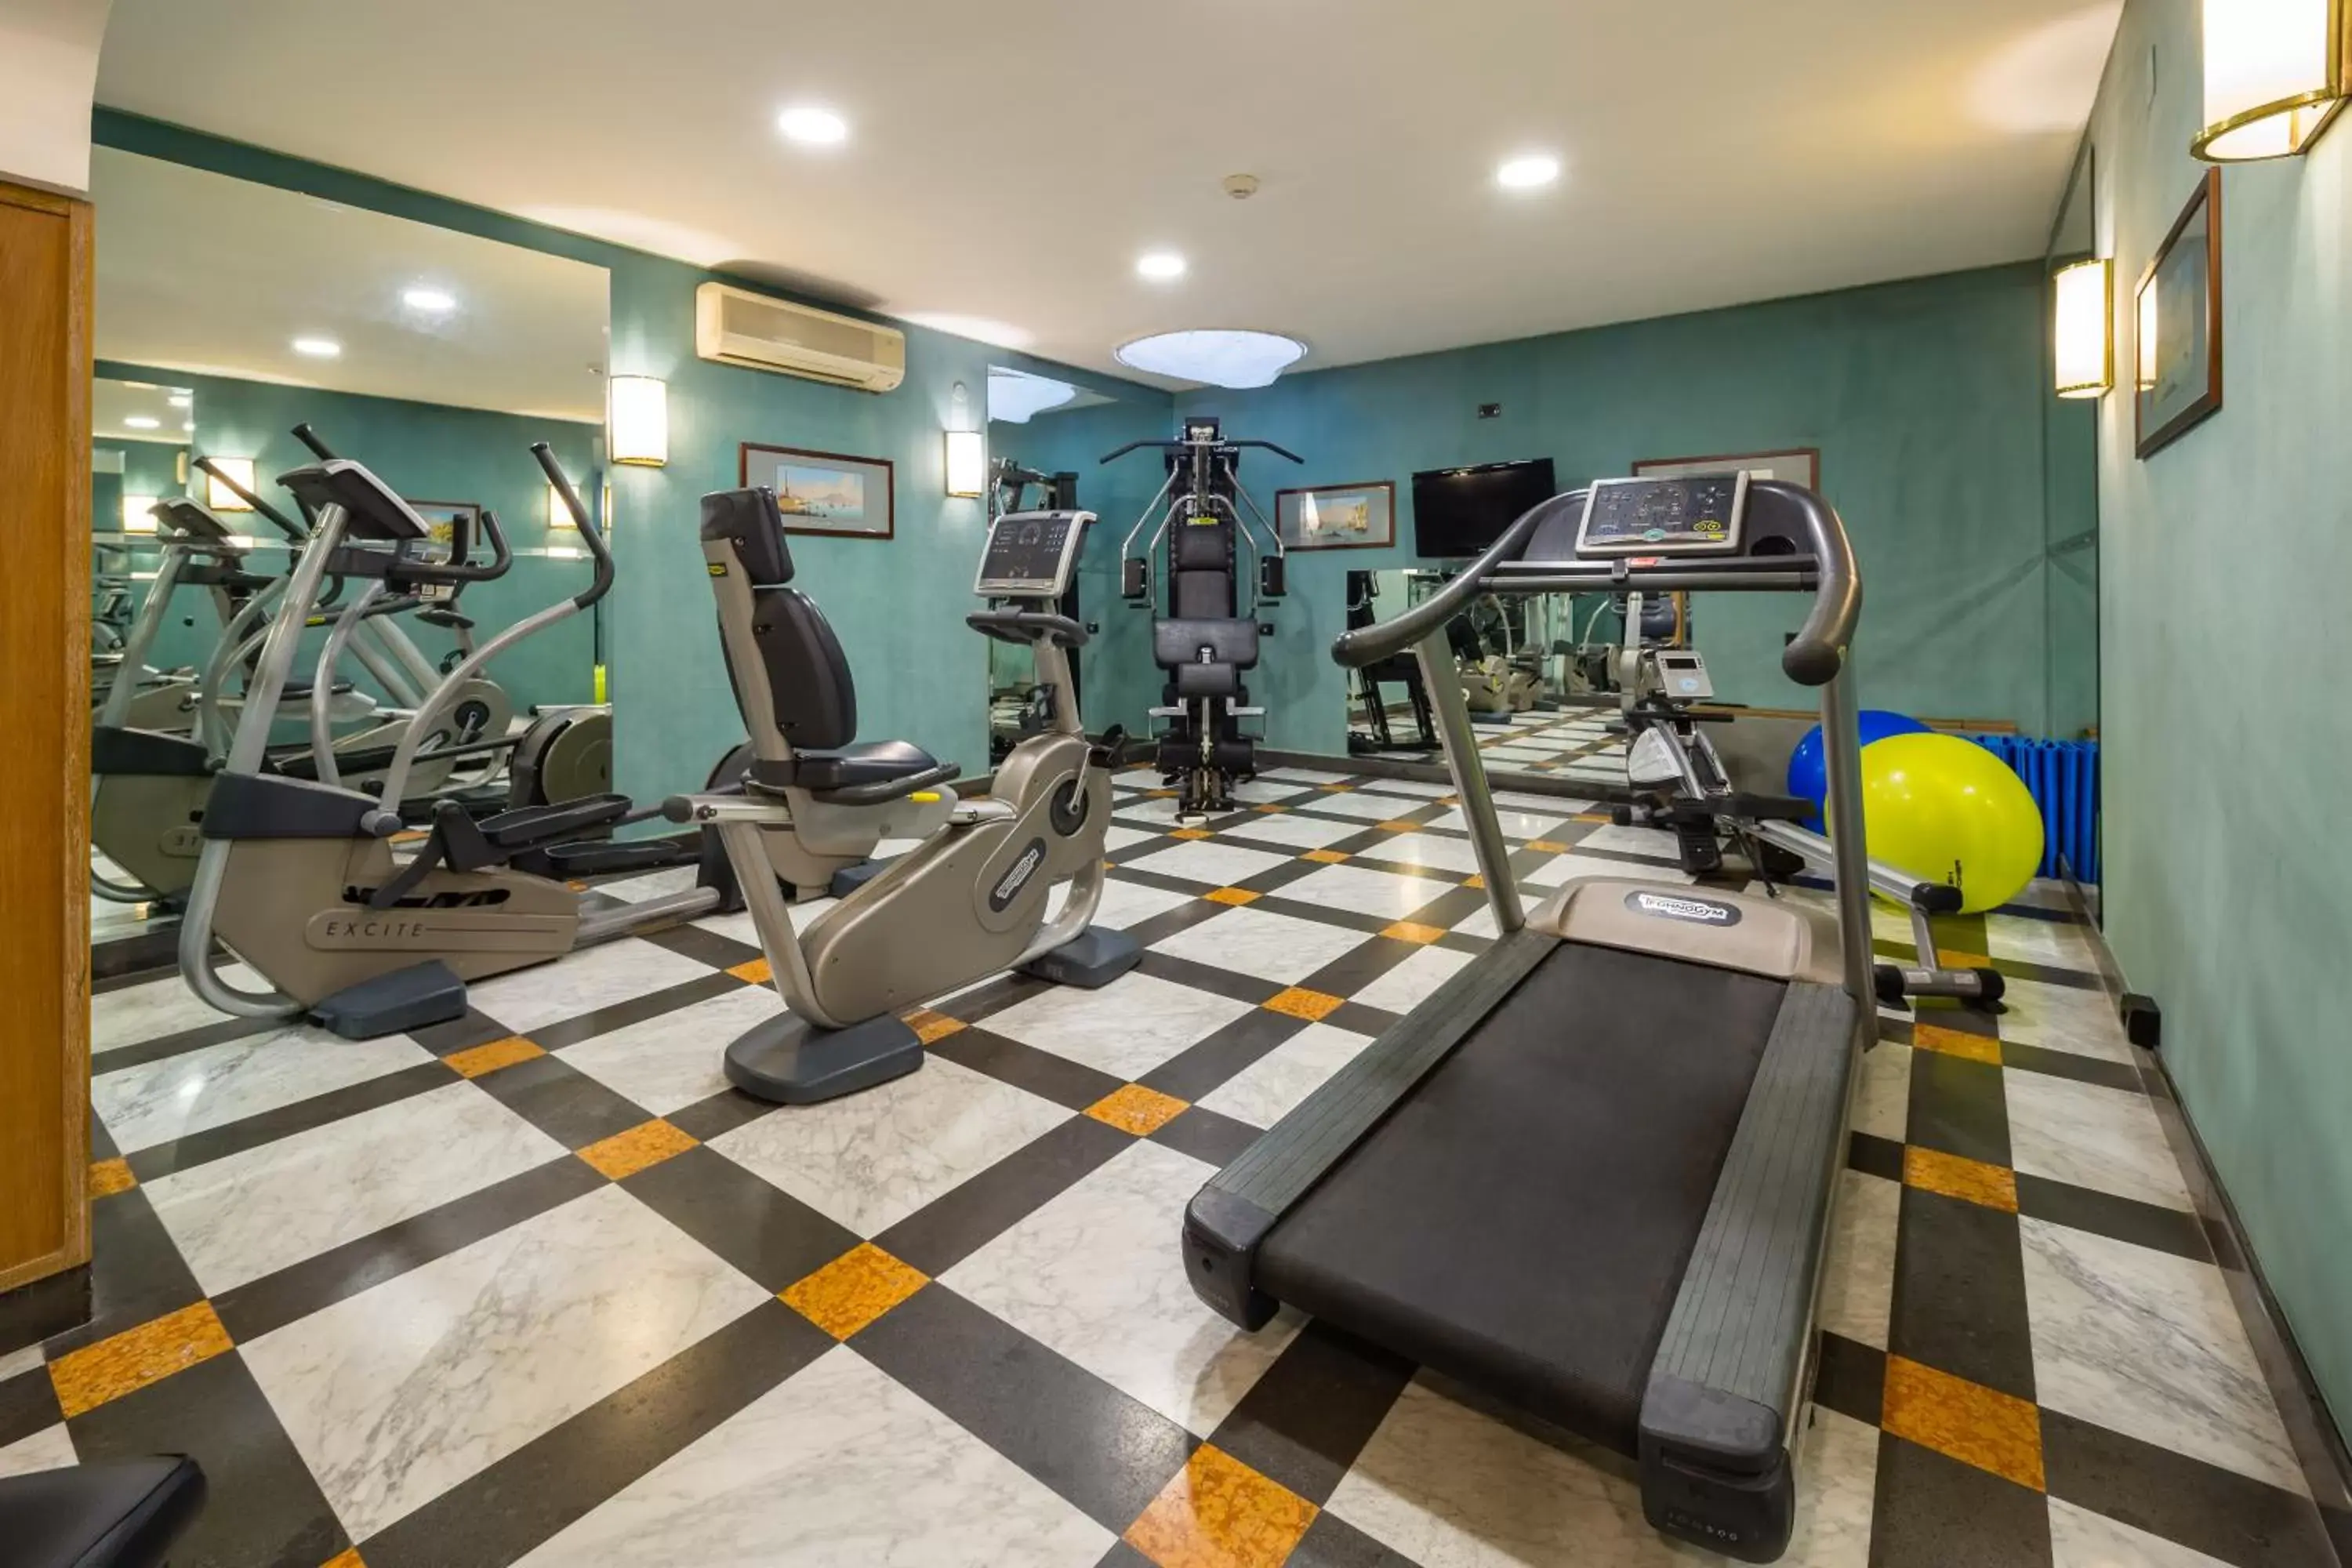 Fitness Center/Facilities in Culture Hotel Villa Capodimonte